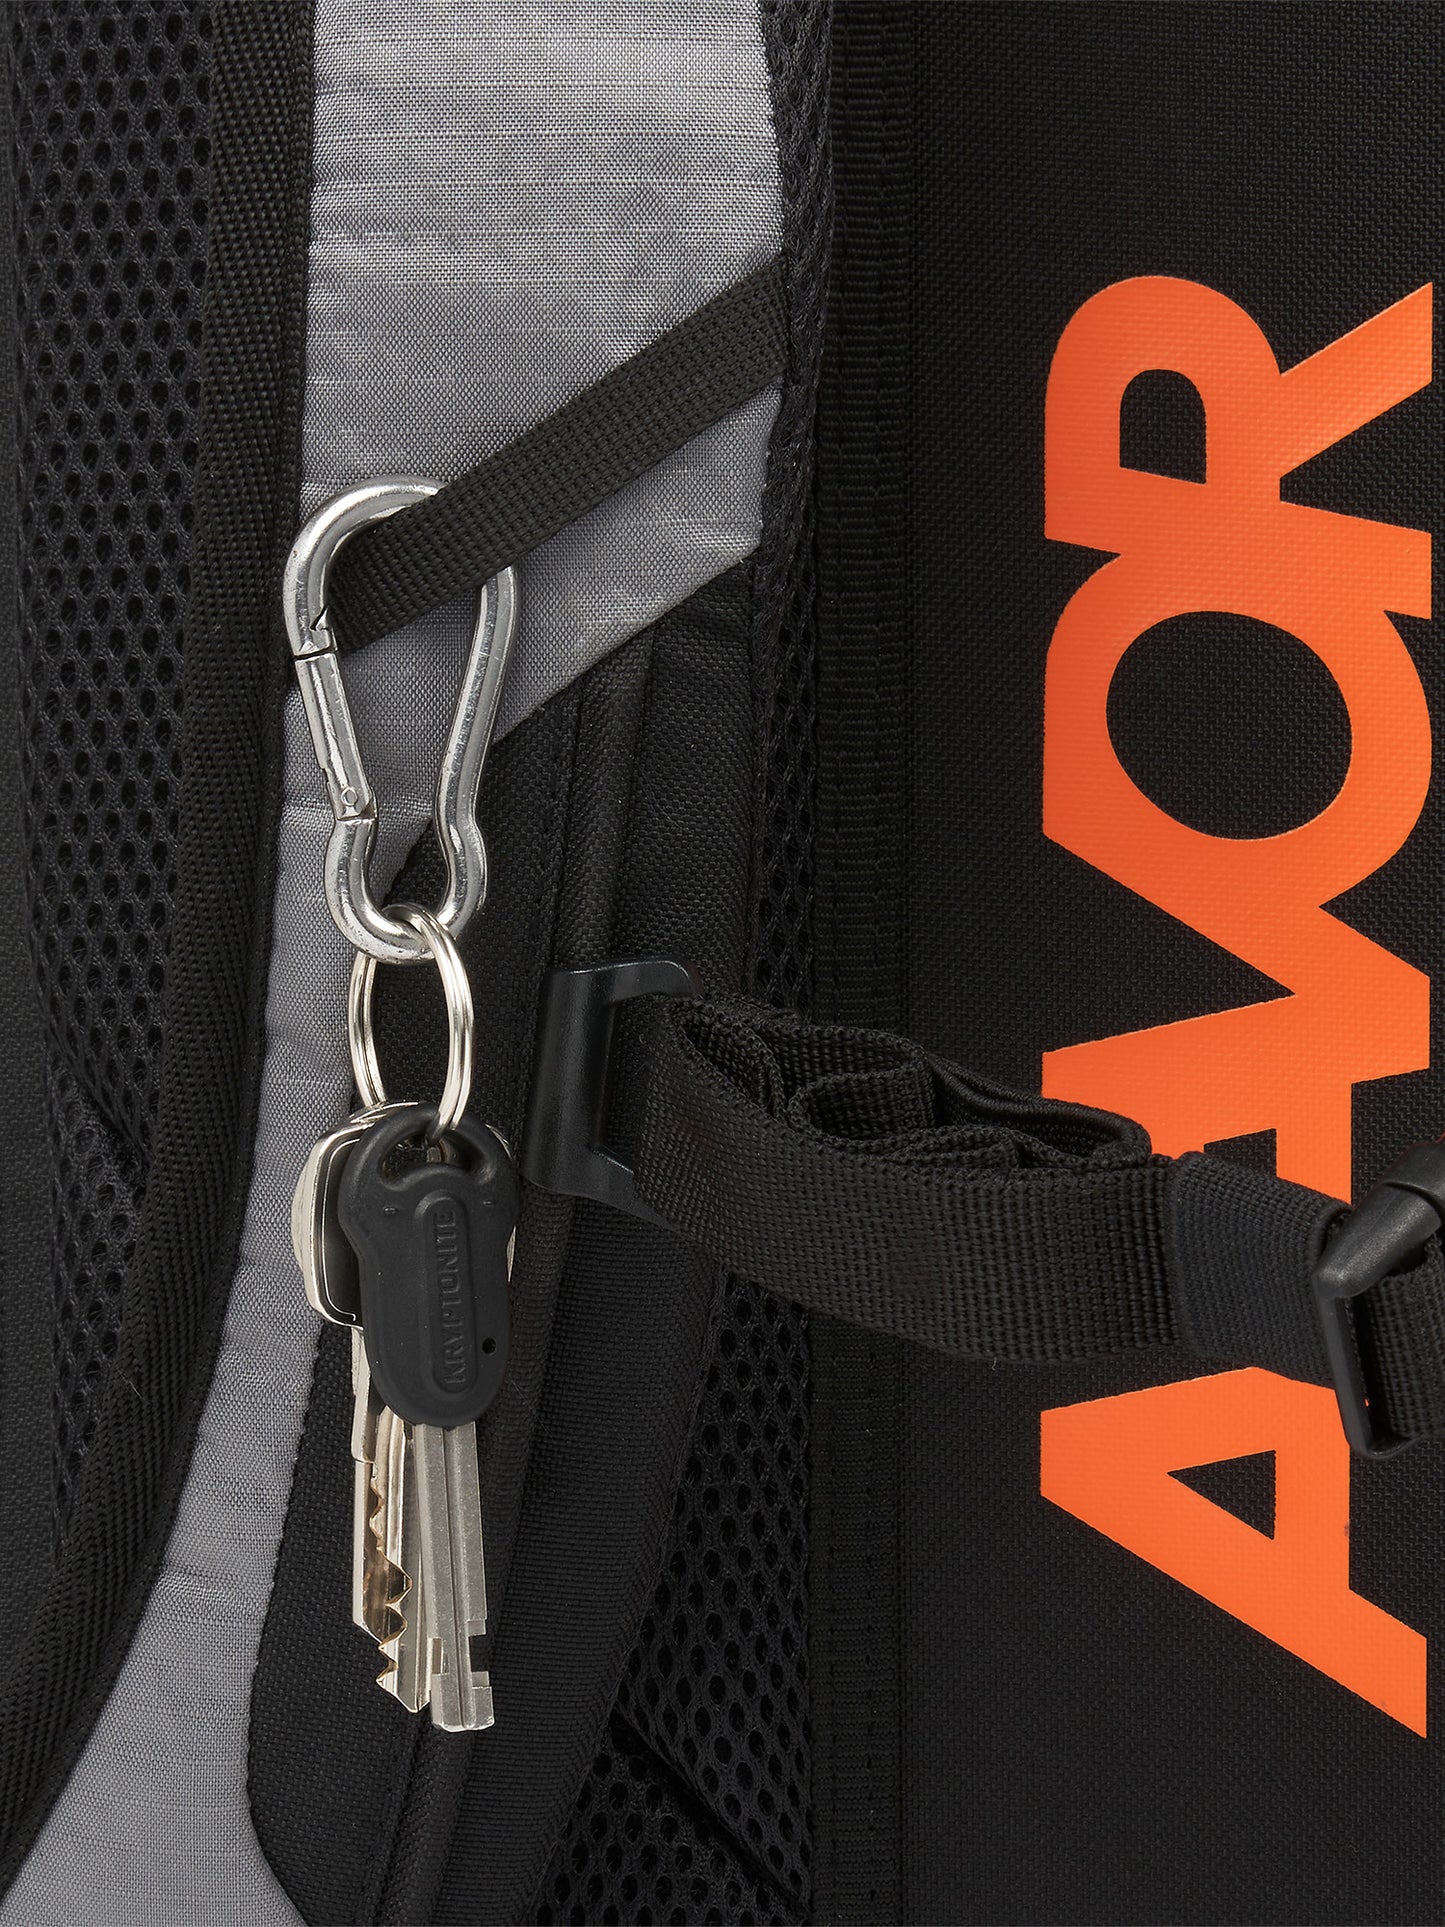 AEVOR-Daypack-Proof-Sundown-details